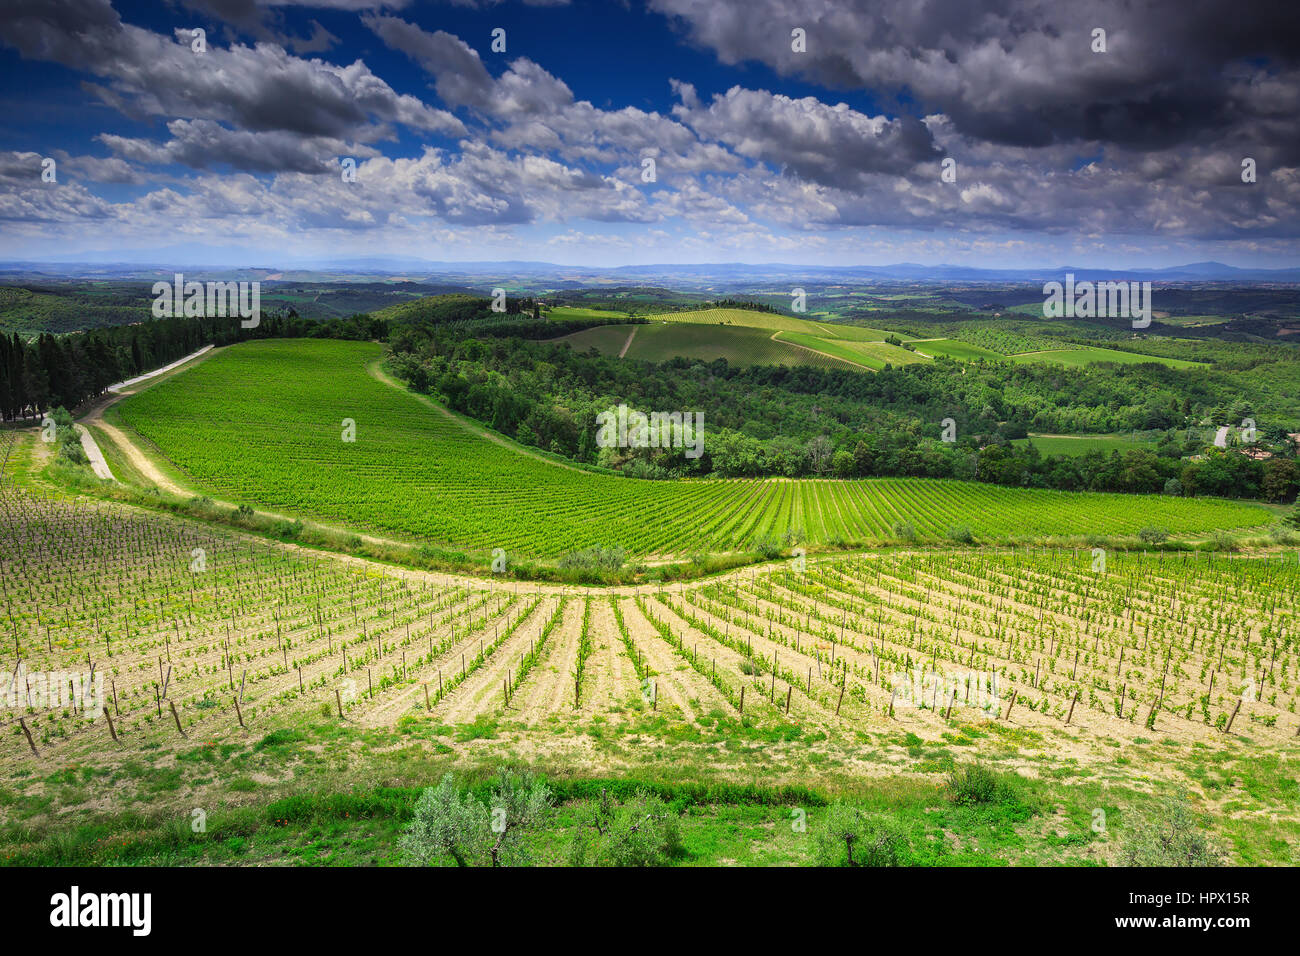 Amazing landscape of vineyards in Tuscany,Italy Stock Photo